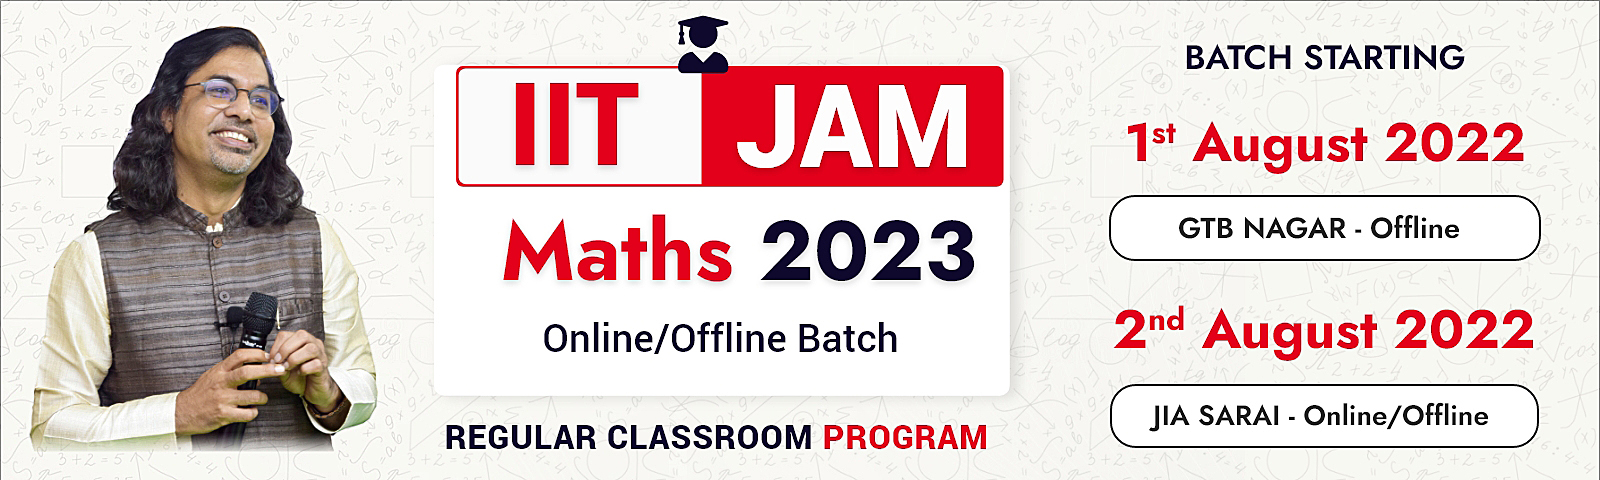 iit jam maths/stats Online Classes